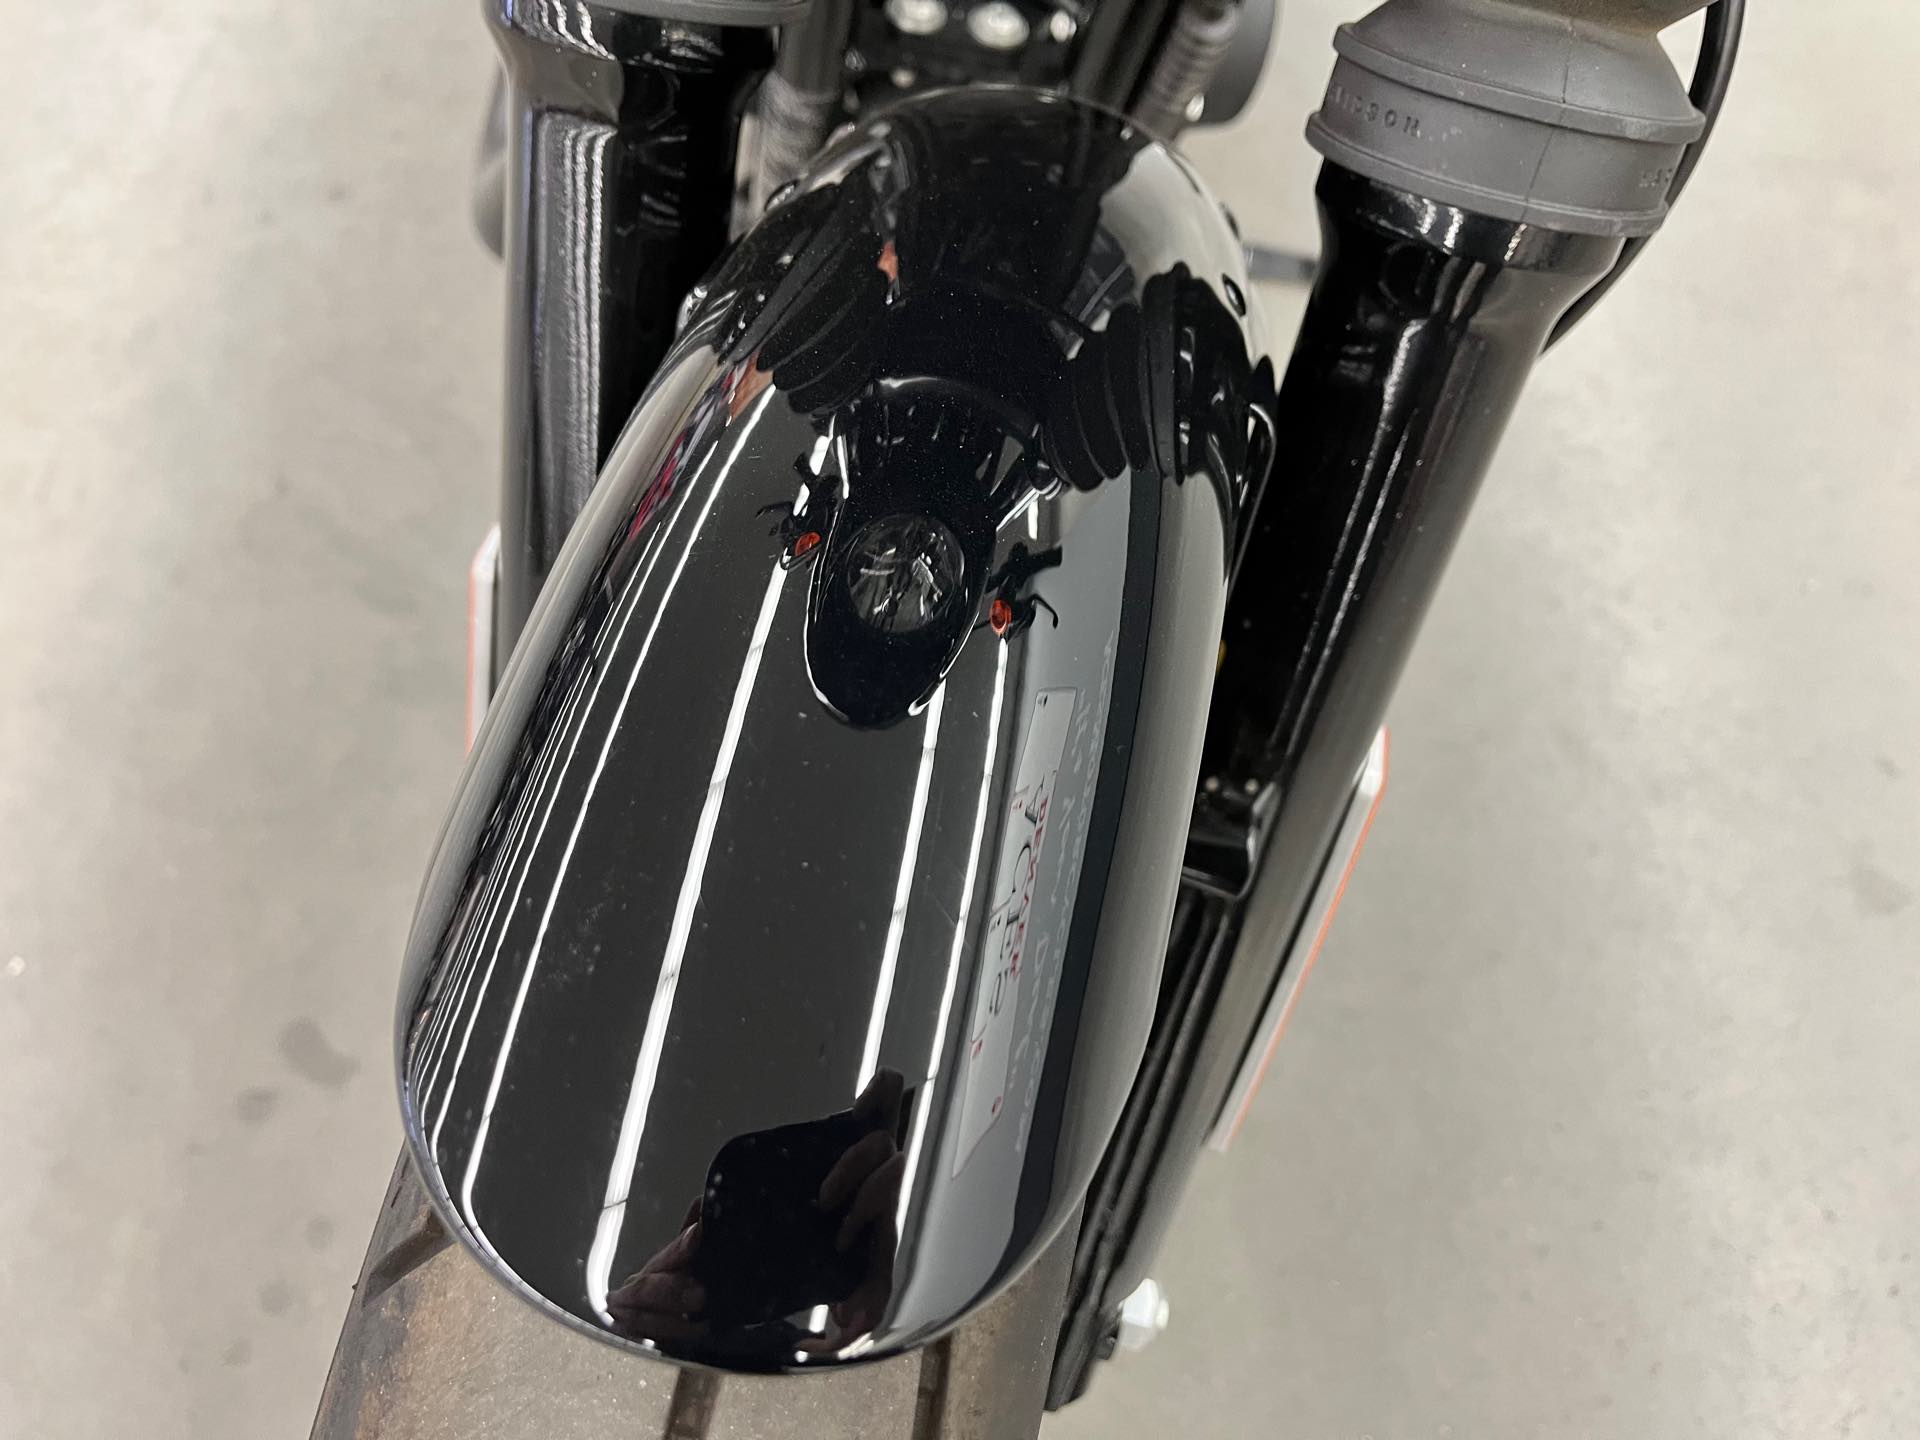 2021 Harley-Davidson Cruiser XL 1200NS Iron 1200 at Aces Motorcycles - Denver